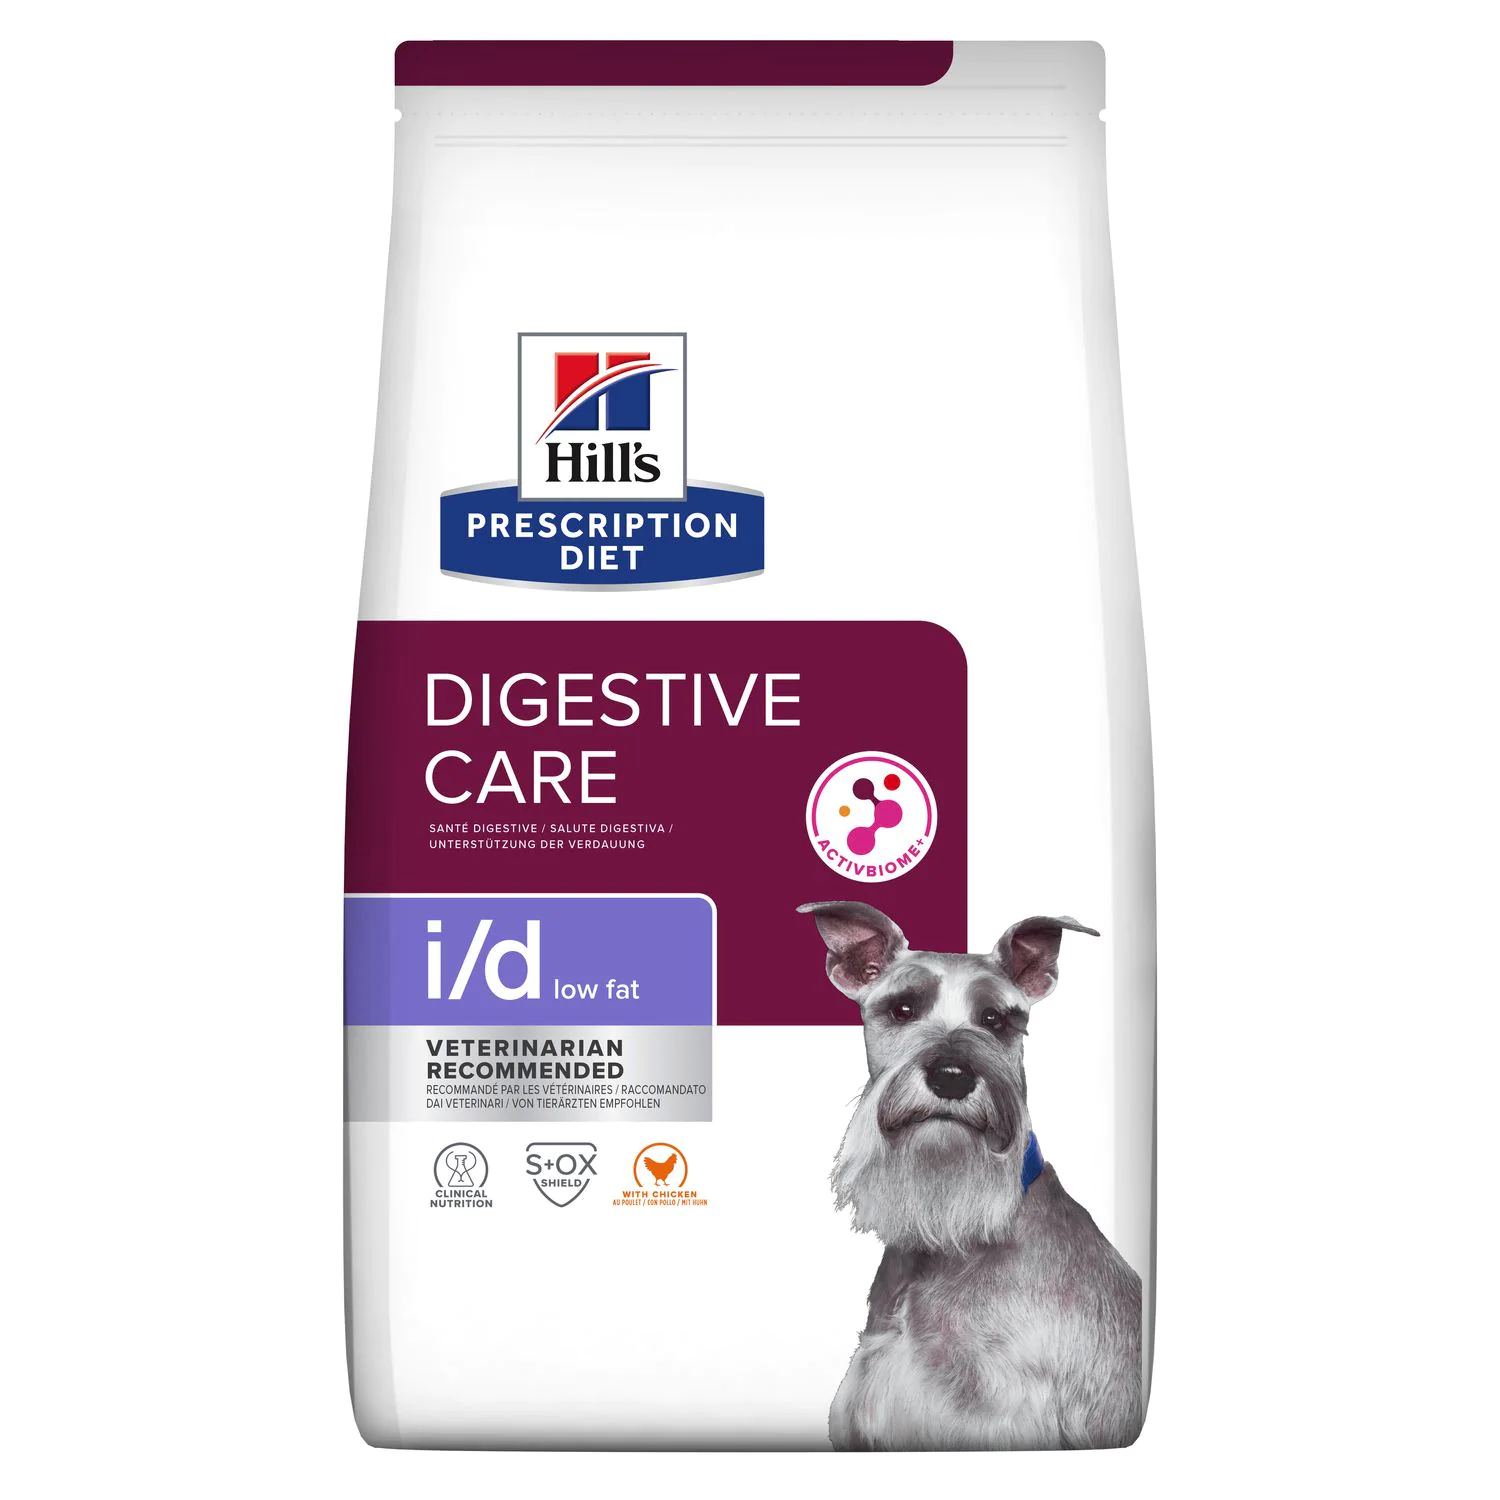 Ветеринарный сухой корм для собак Hill's (Хиллс) Prescription Diet i/d Low Fat Digestive Care, с курицей, 12 кг